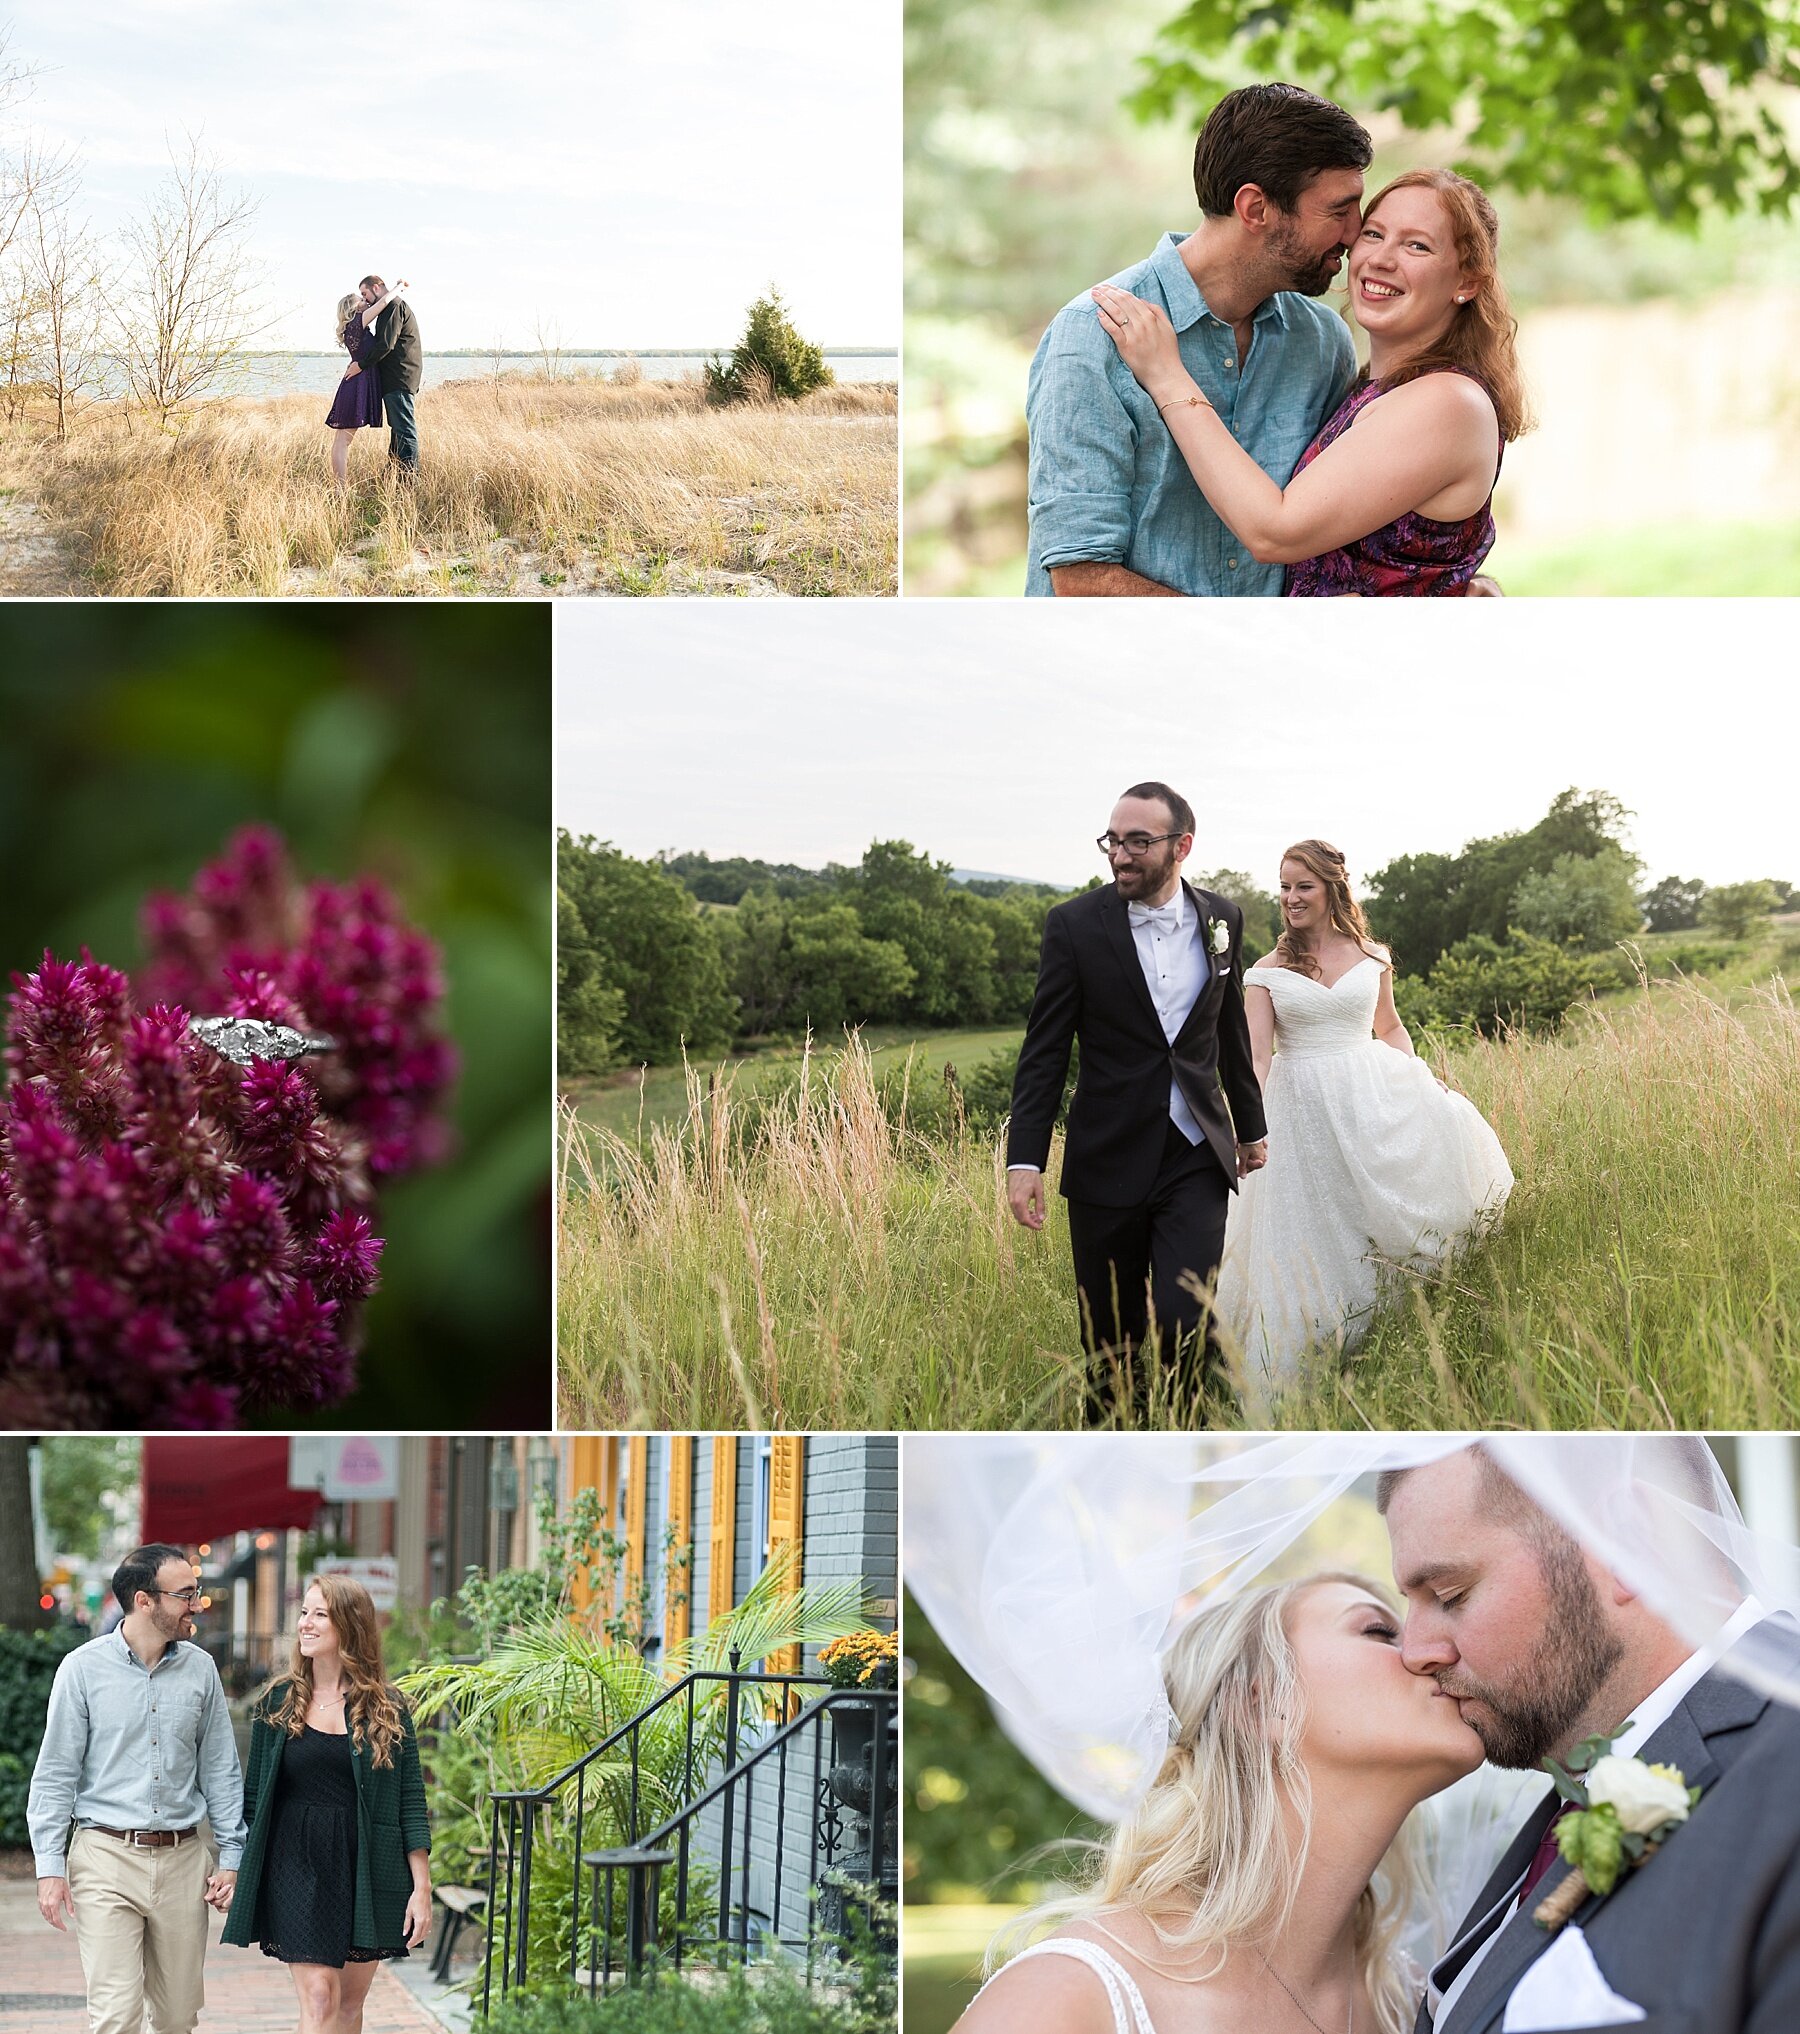 Wendy Zook Photography | Maryland wedding photographer, MD wedding photographer, MD love stories